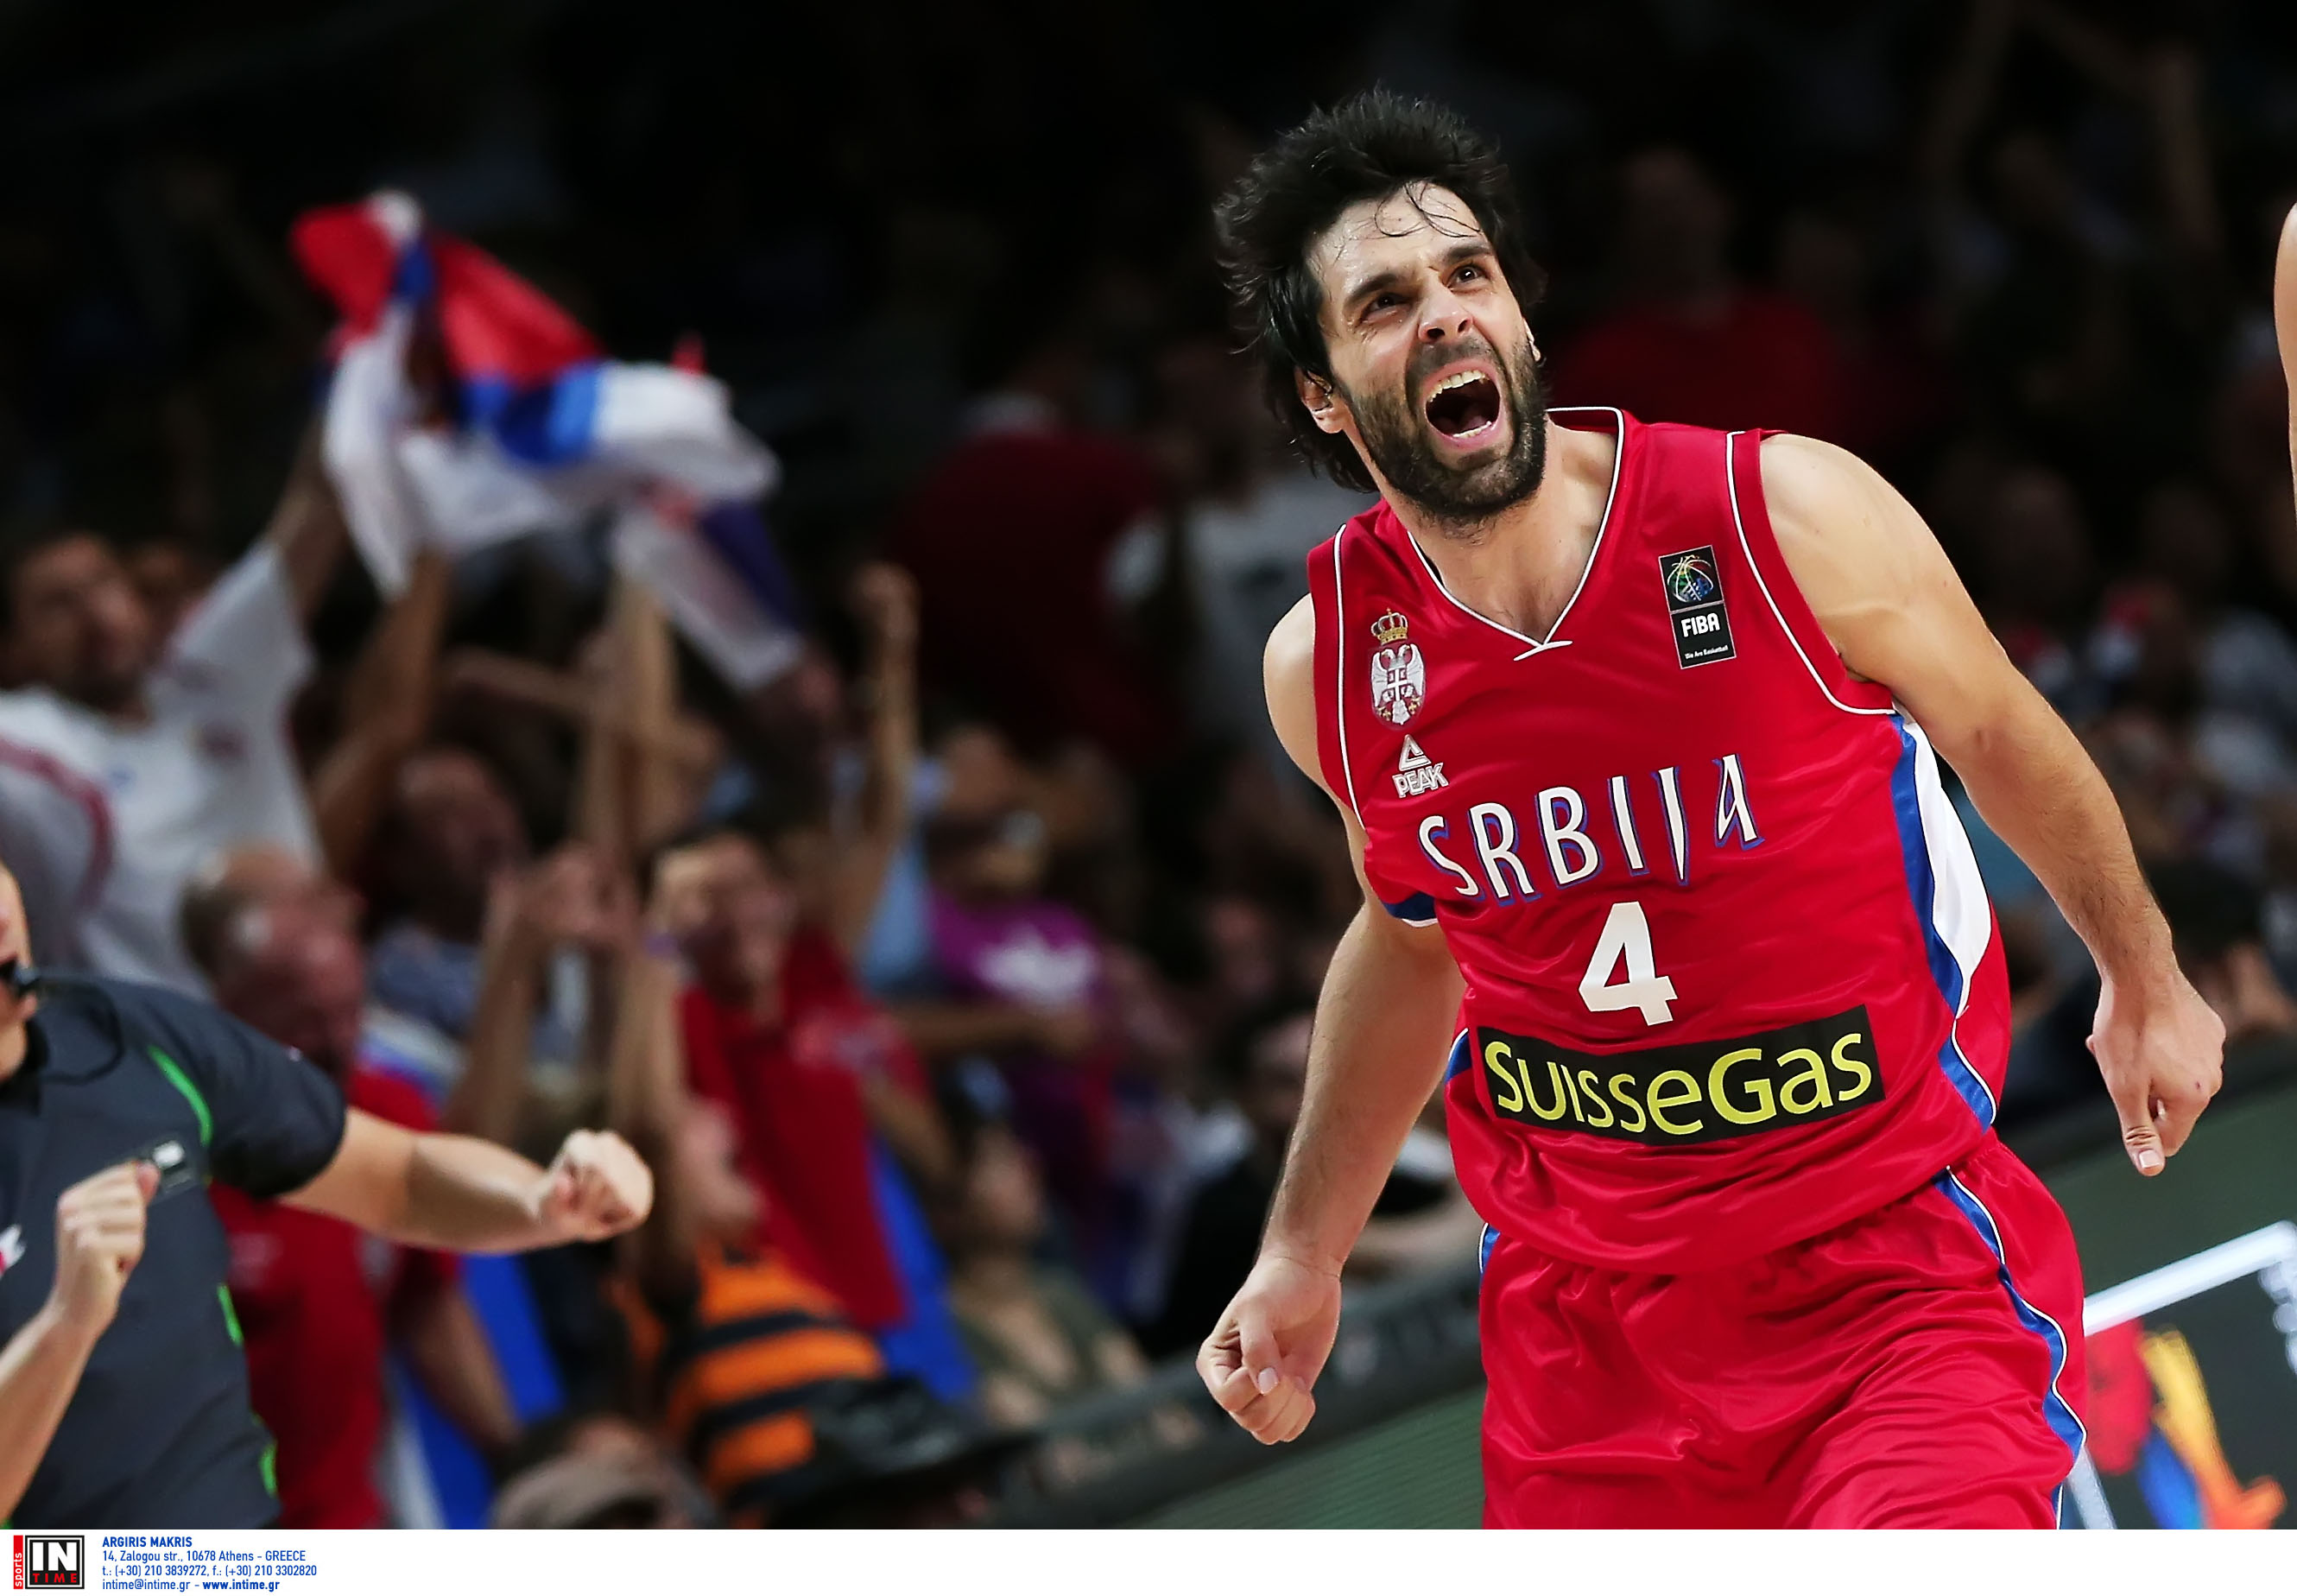 Σοκ στη Σερβία! Χάνει το Μουντομπάσκετ ο Τεόντοσιτς